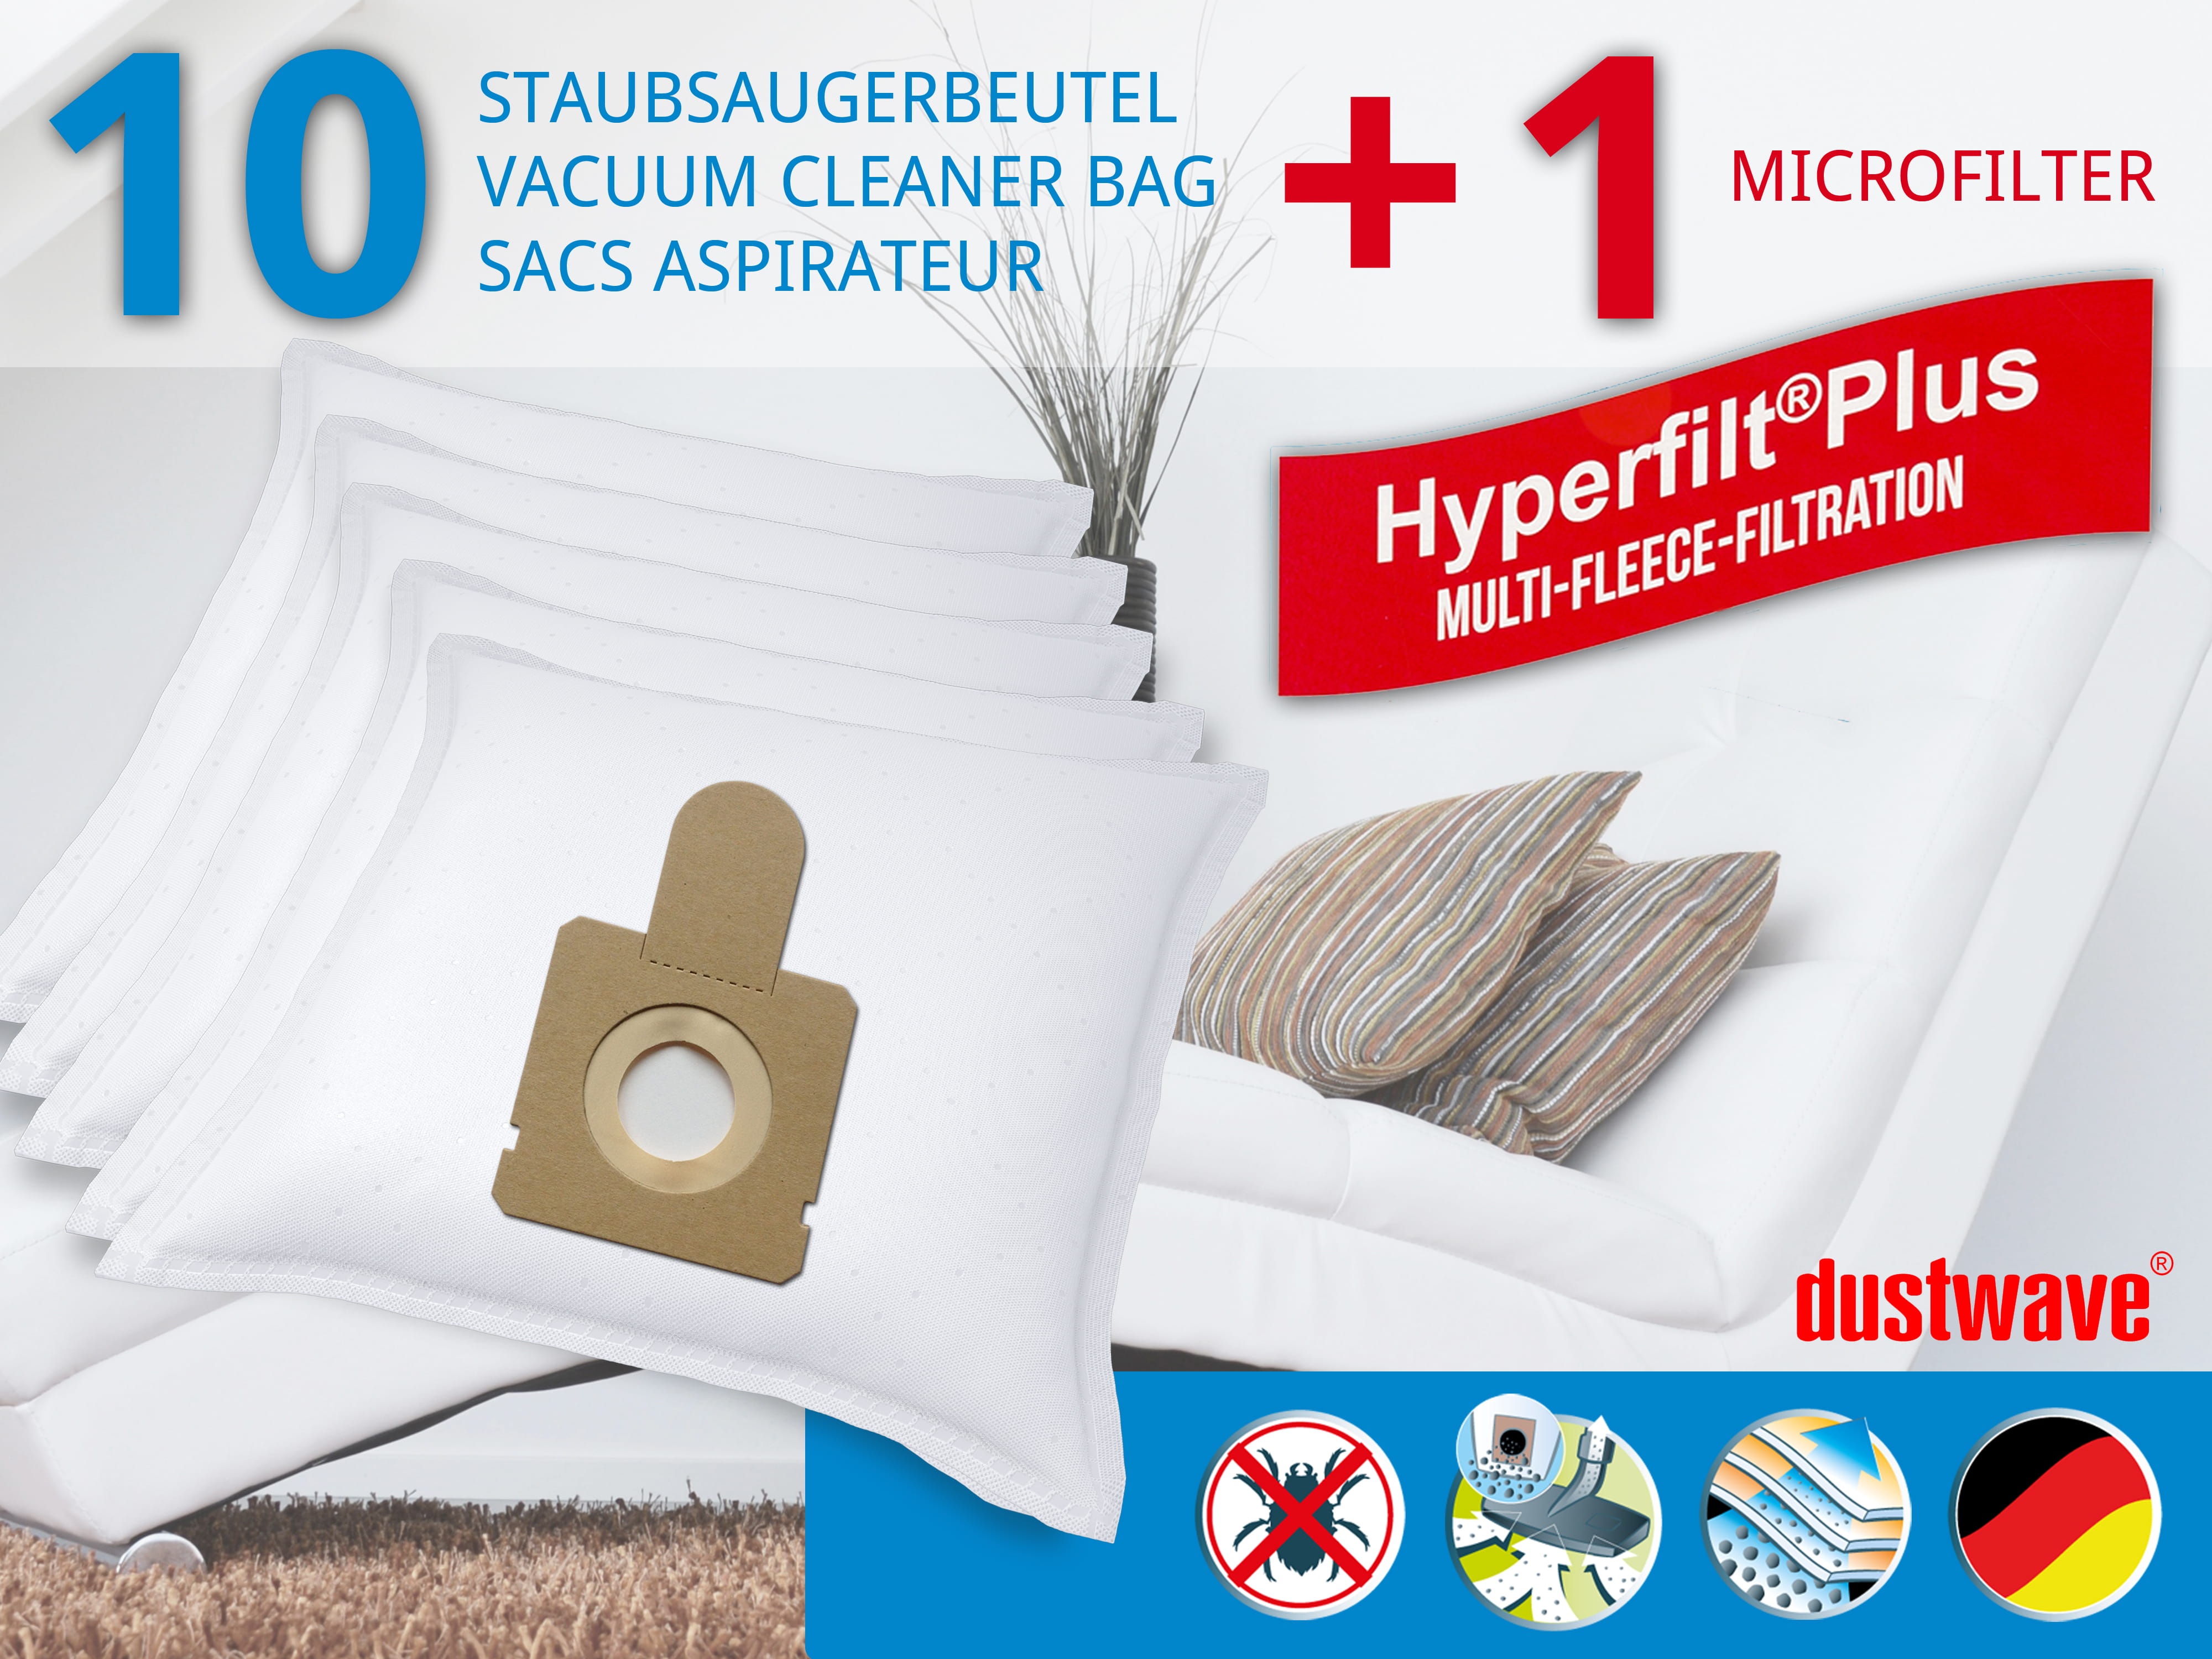 Dustwave® 10 Staubsaugerbeutel für Hoover CP14_CP36011 - hocheffizient, mehrlagiges Mikrovlies mit Hygieneverschluss - Made in Germany